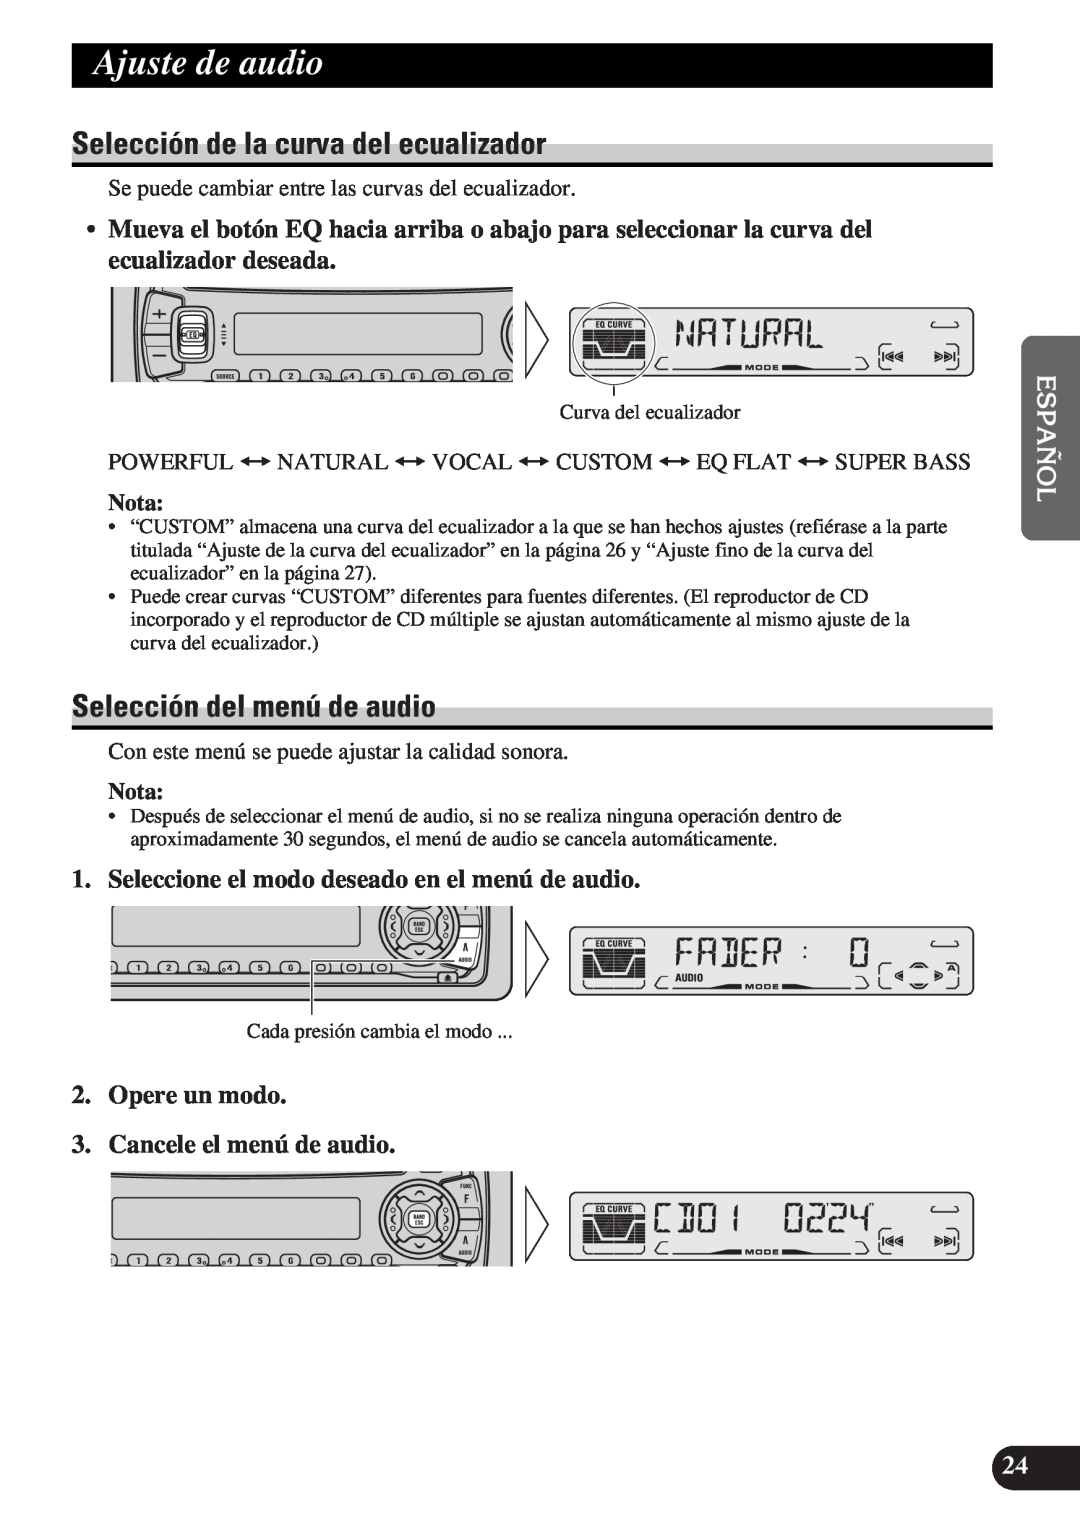 Pioneer DEH-P3150-B Ajuste de audio, Selección de la curva del ecualizador, Selección del menú de audio, Nota 